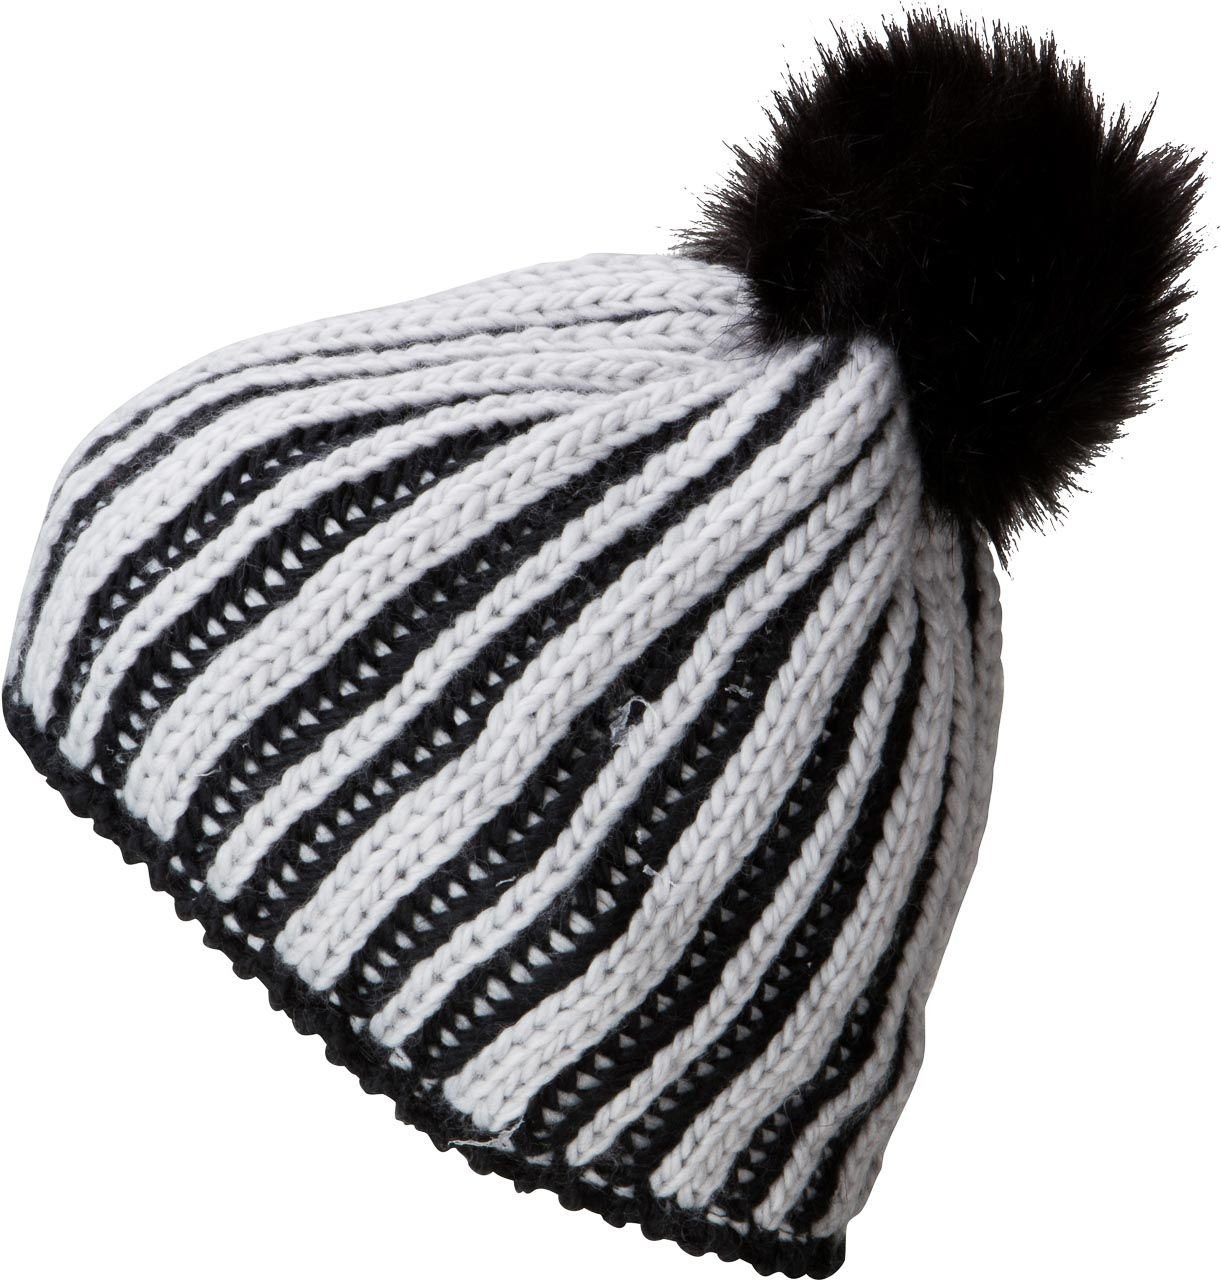 Myrtle Beach Strickmütze Damen Wintermütze für die kalte Jahreszeit MB7107 Innenseite mit Fleeceband silver/black